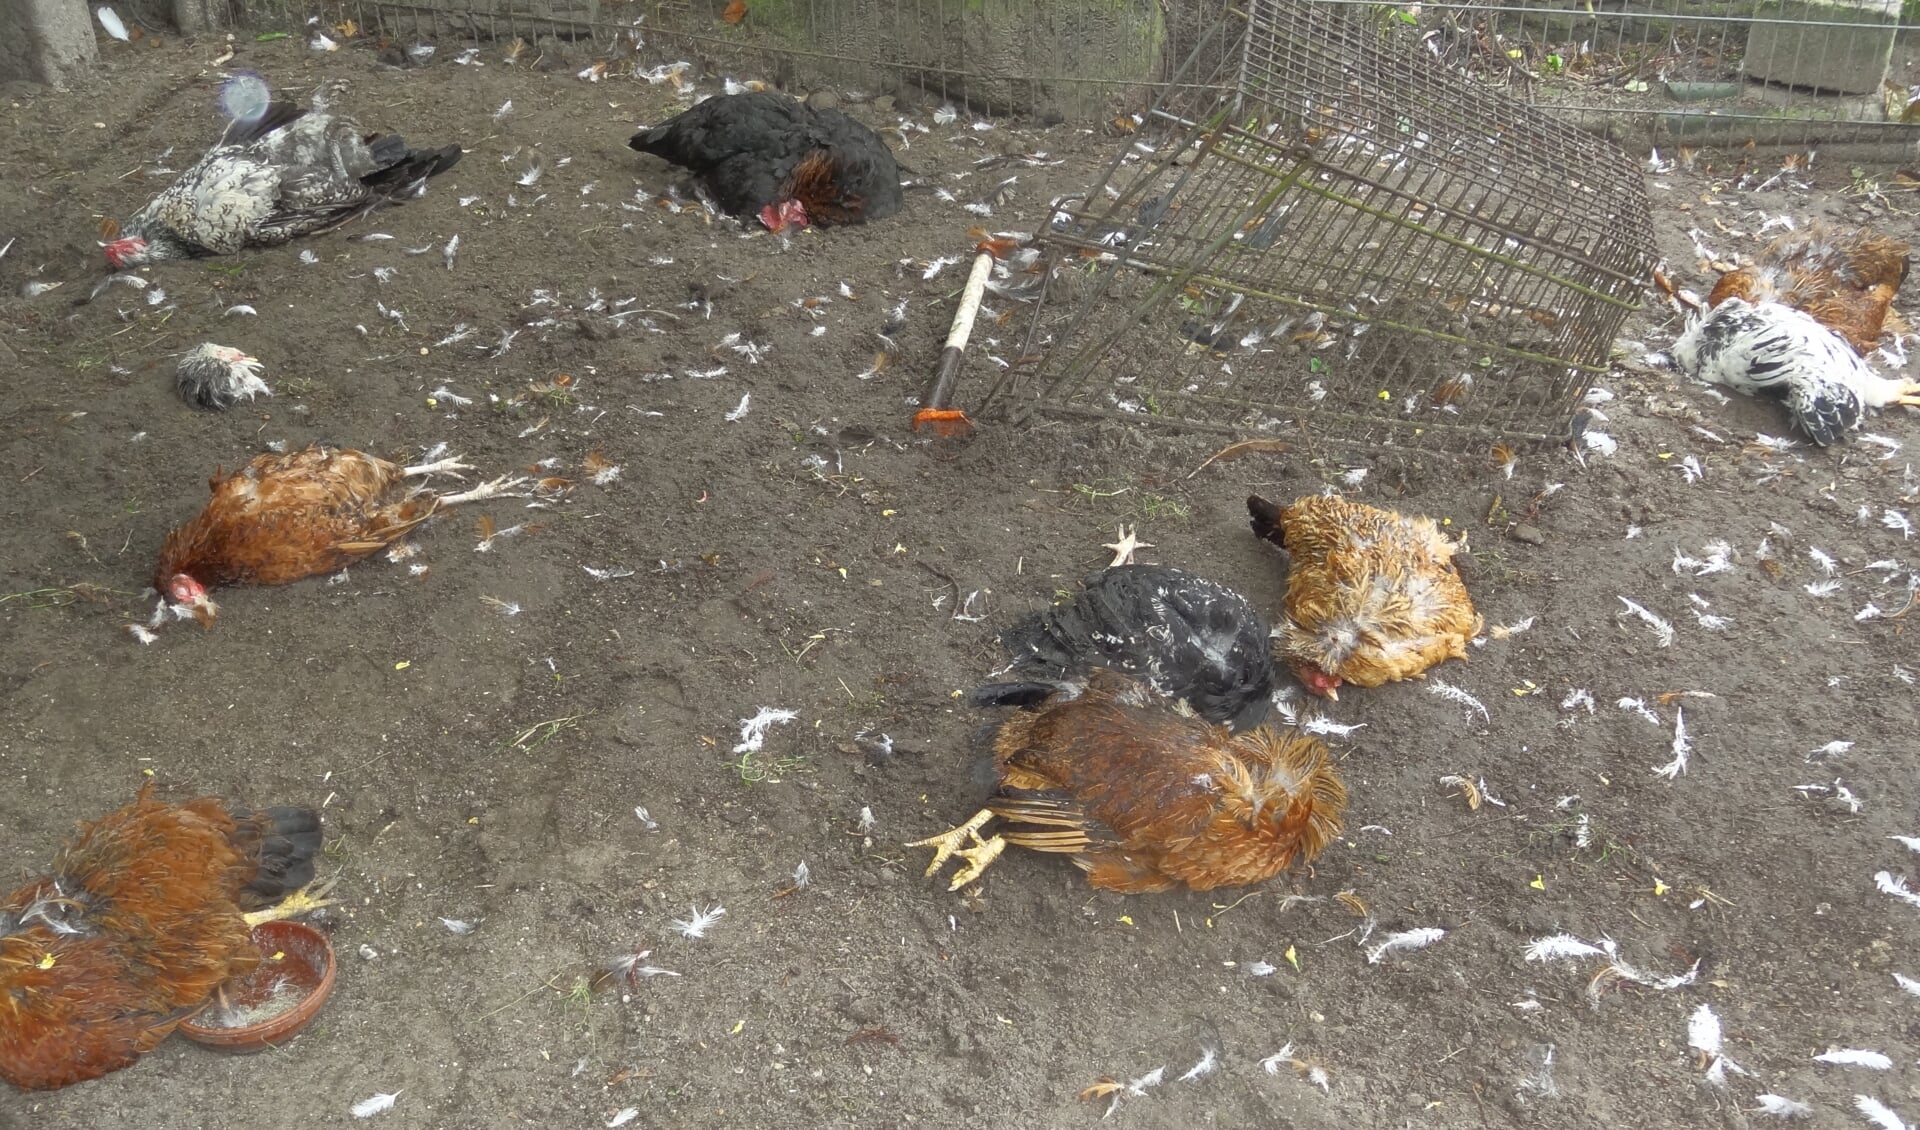 De kippenren veranderde in een slagveld.